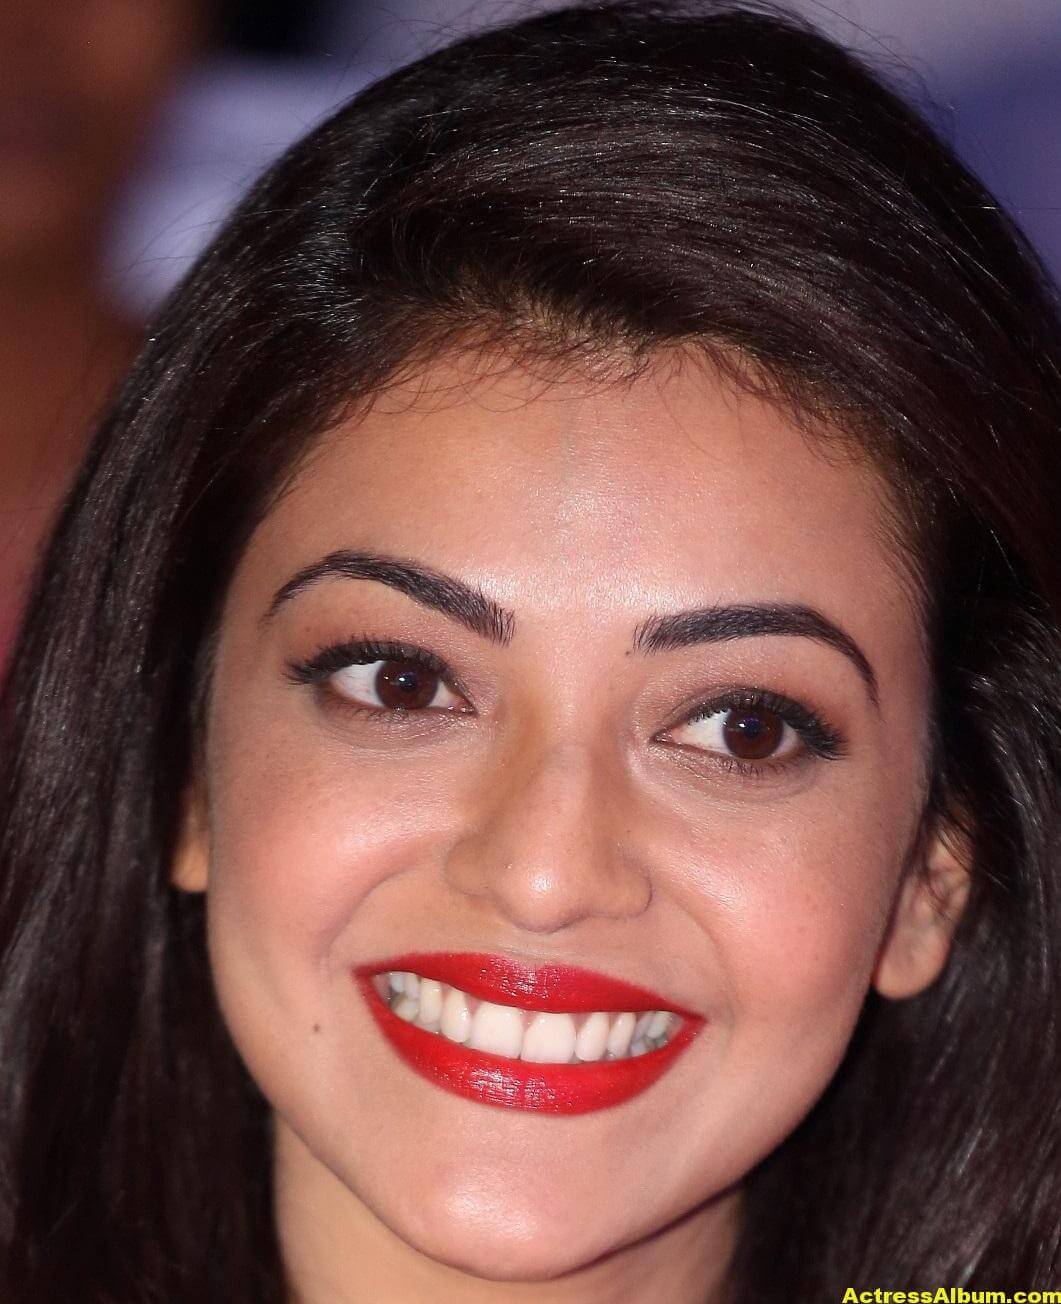 Actress Kajal Aggarwal Face Close Up Stills 6 - Actress Album